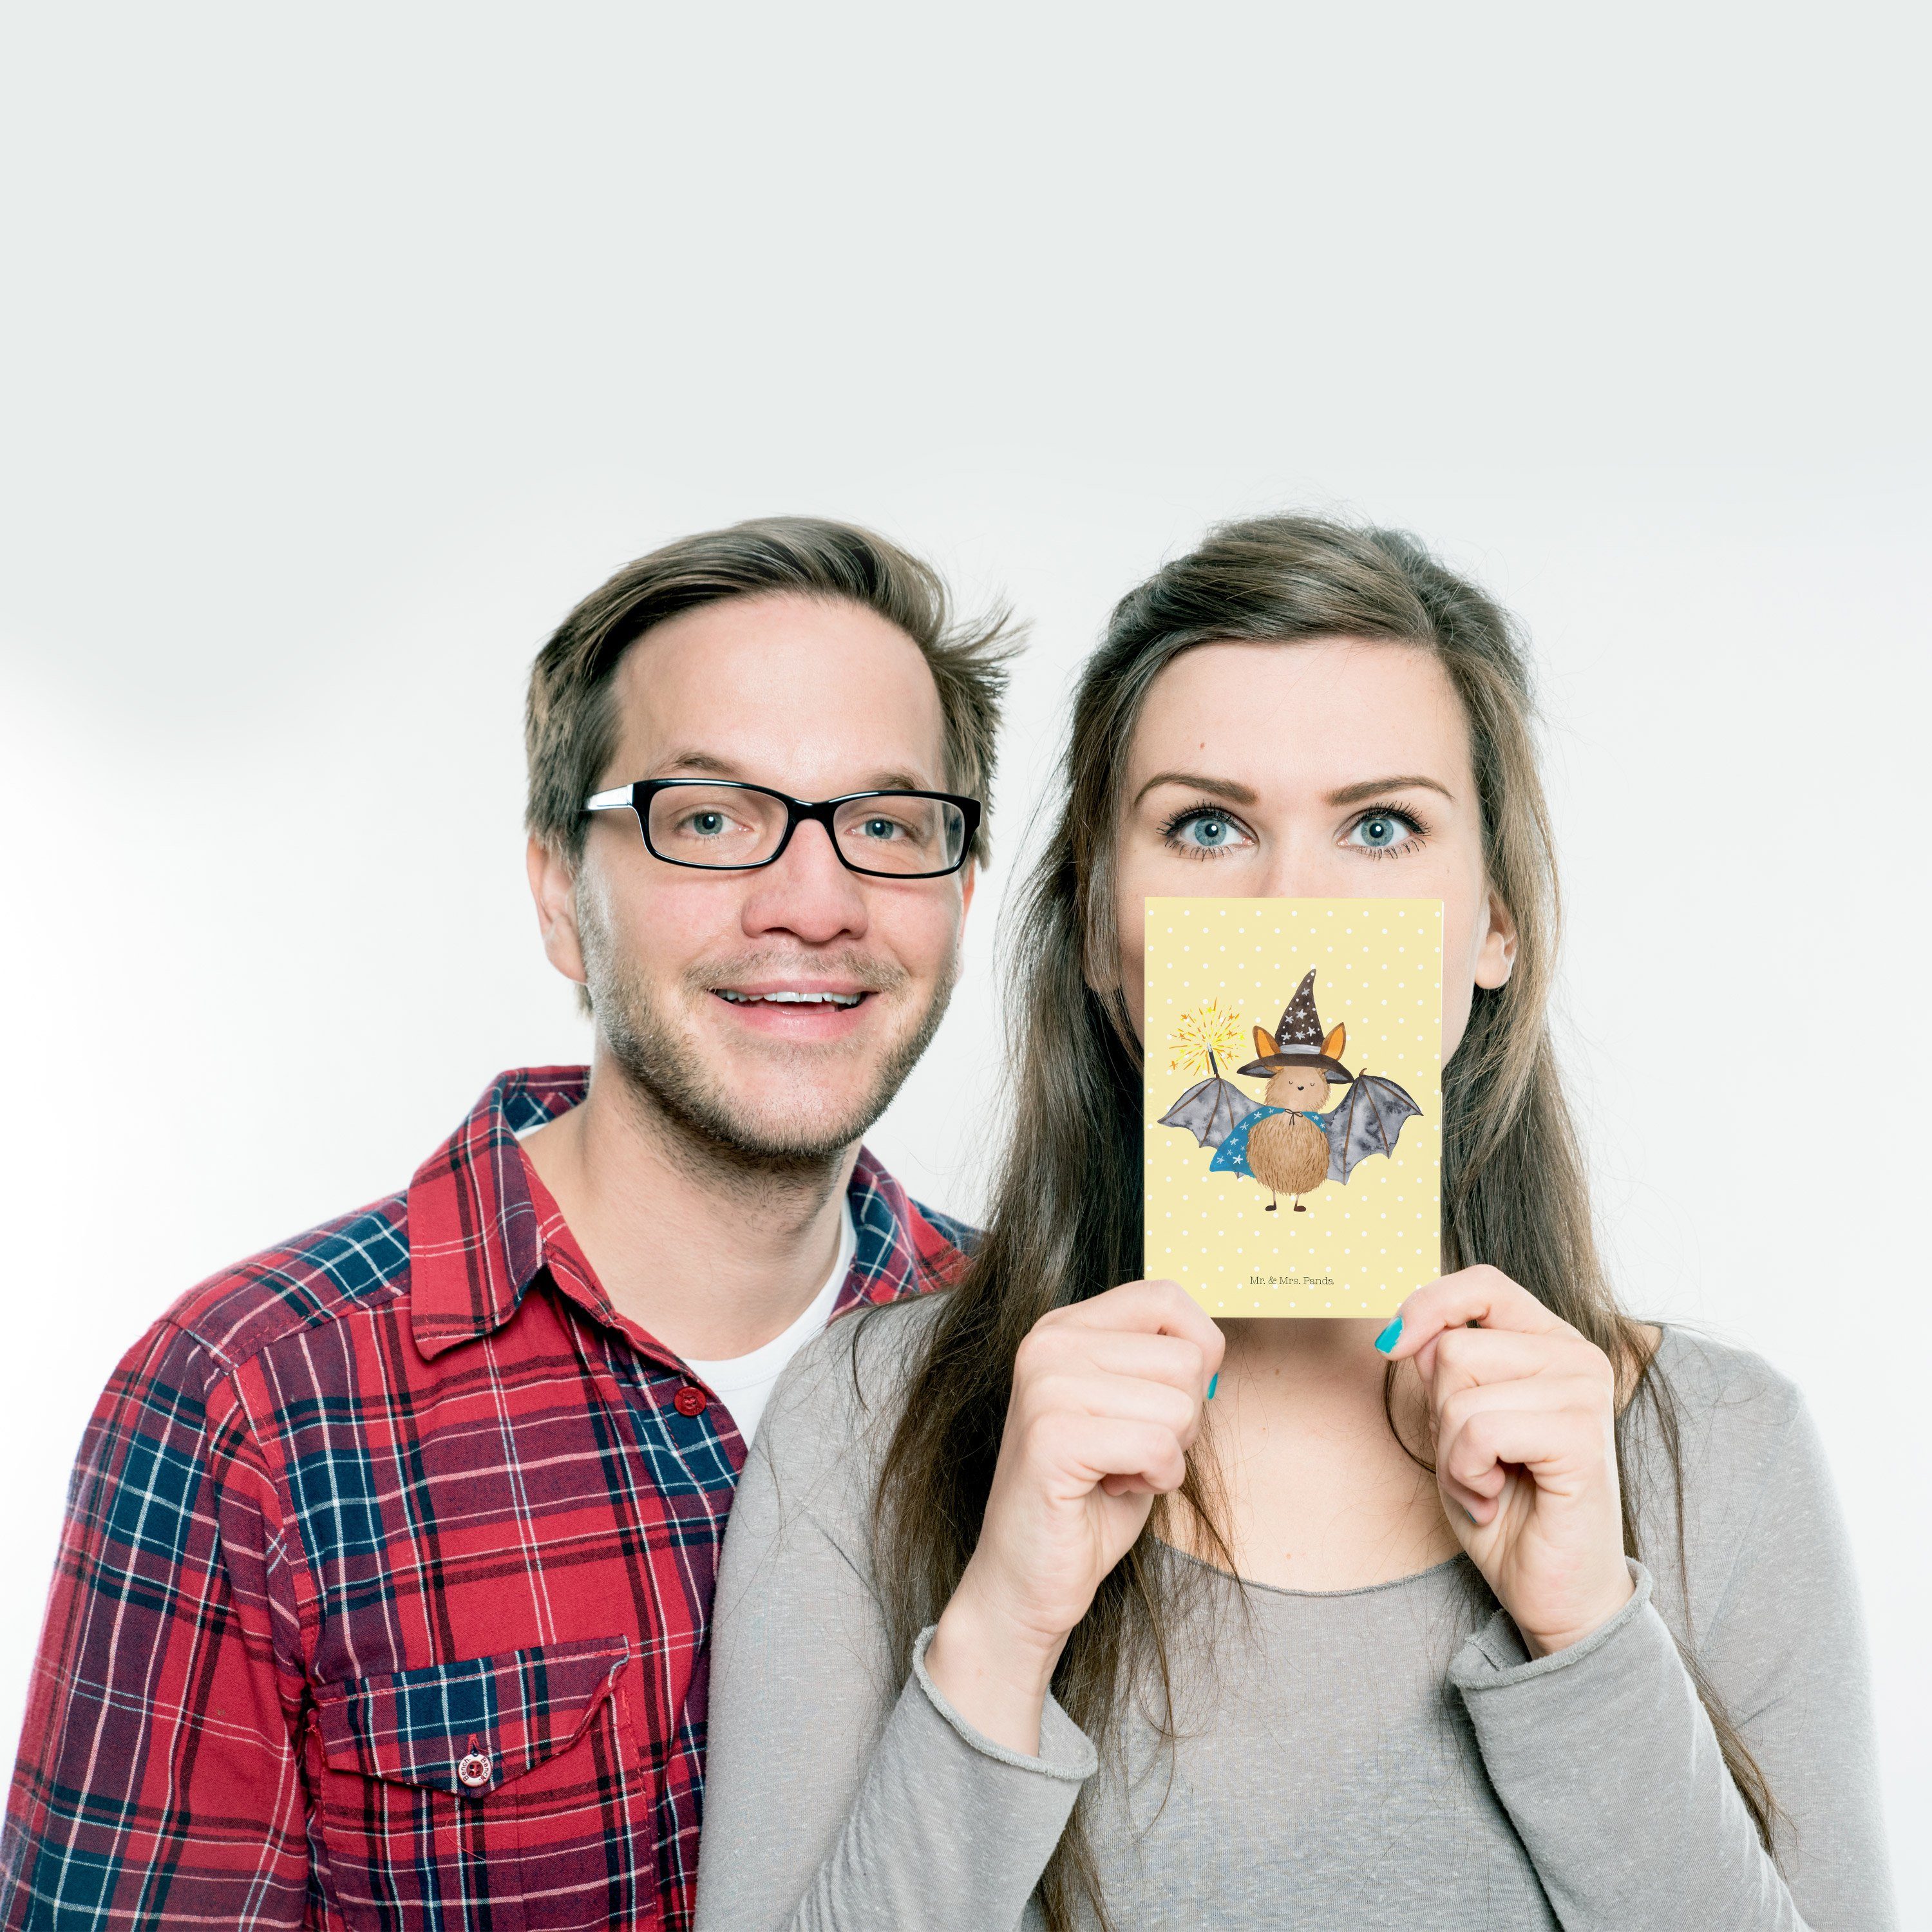 Geschenk, Fledermaus Mr. Mrs. & Zauberer Pastell - Sprüche, lustige Magie Panda - Gelb Postkarte